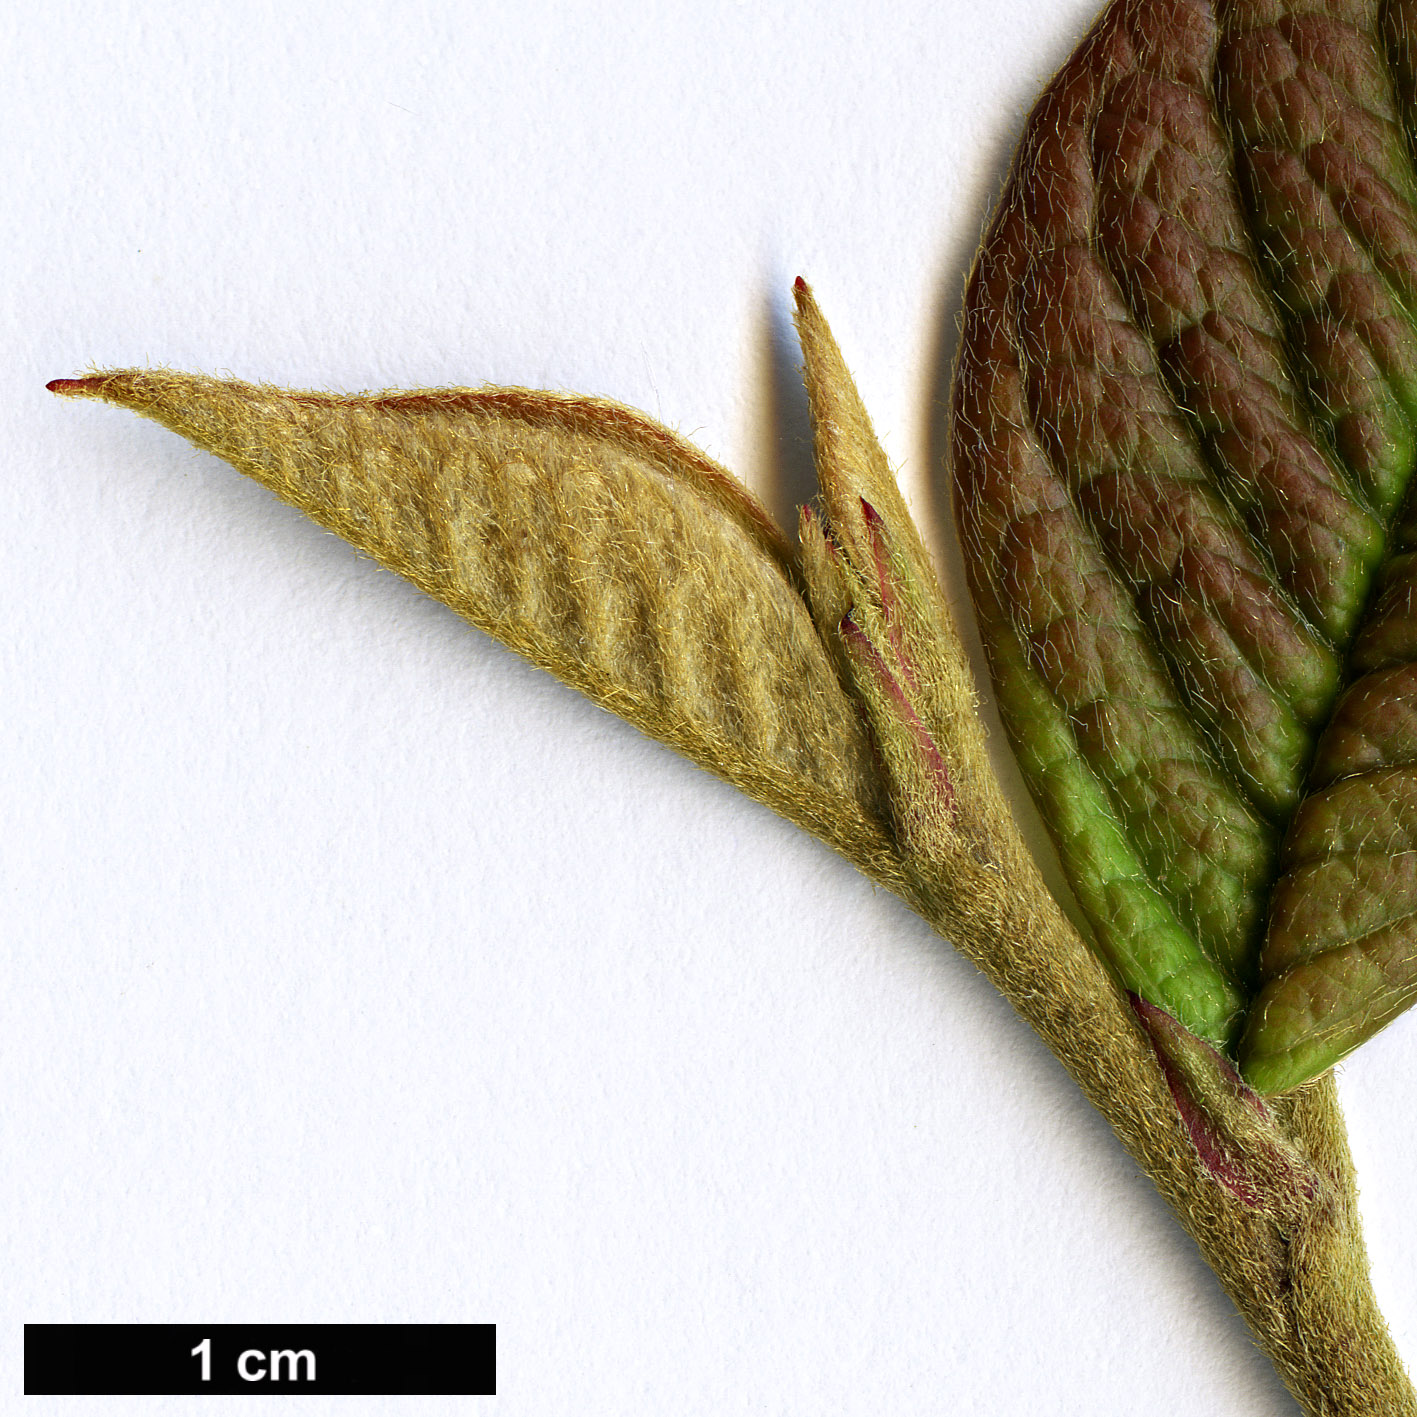 High resolution image: Family: Rosaceae - Genus: Cotoneaster - Taxon: cornifolius